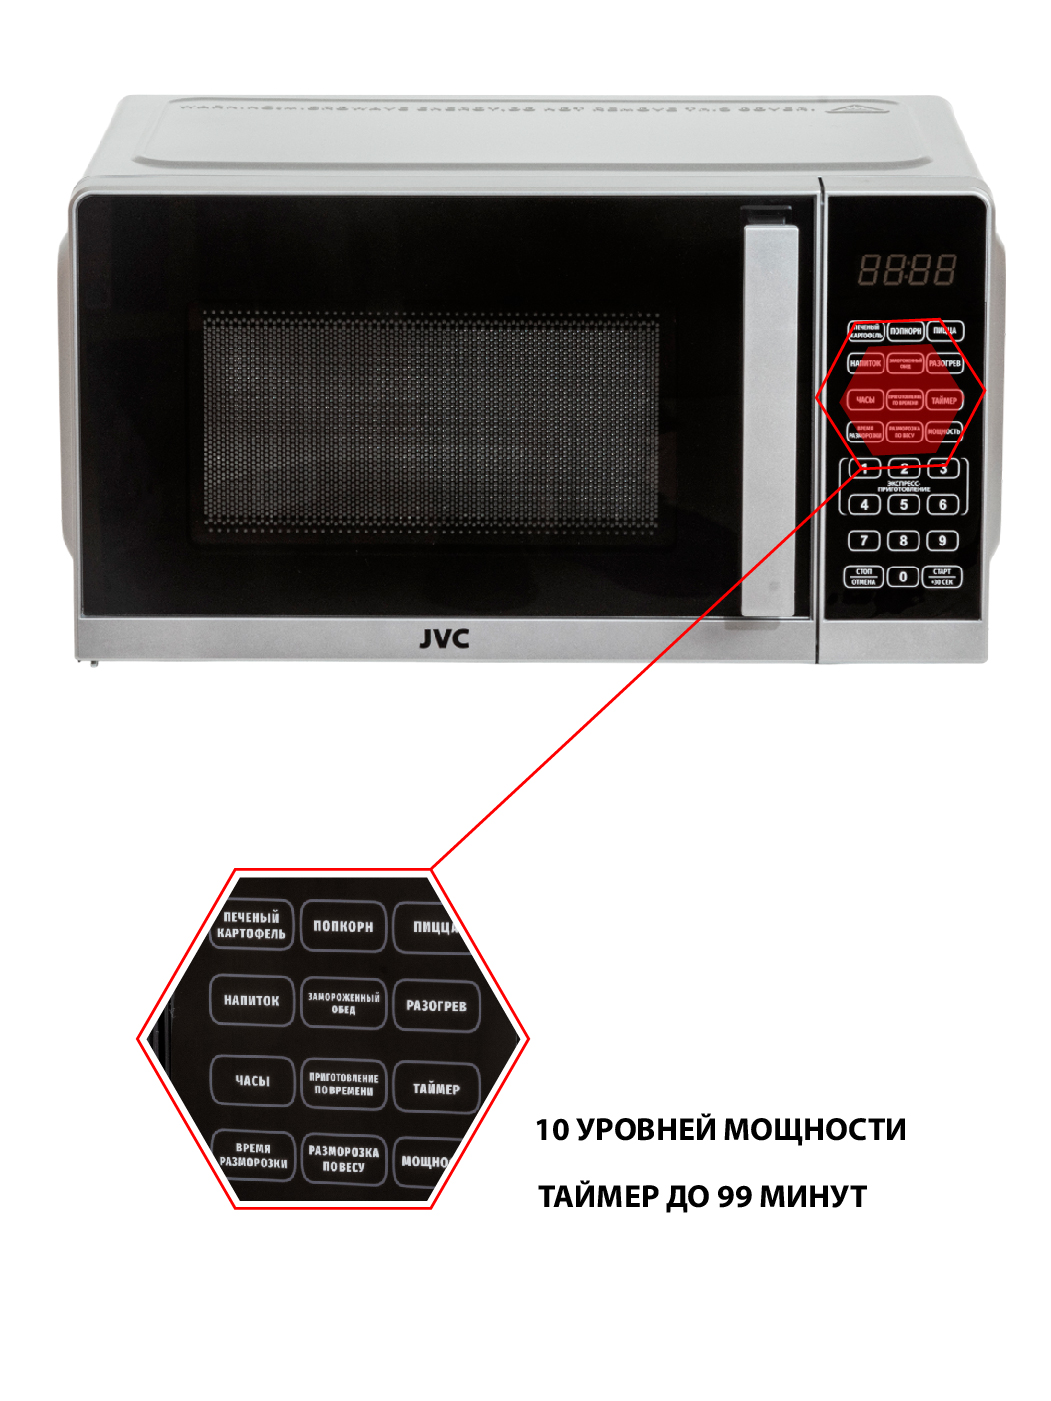 Микроволновая печь (СВЧ) JVC JK-MW372S купить в Красноярске